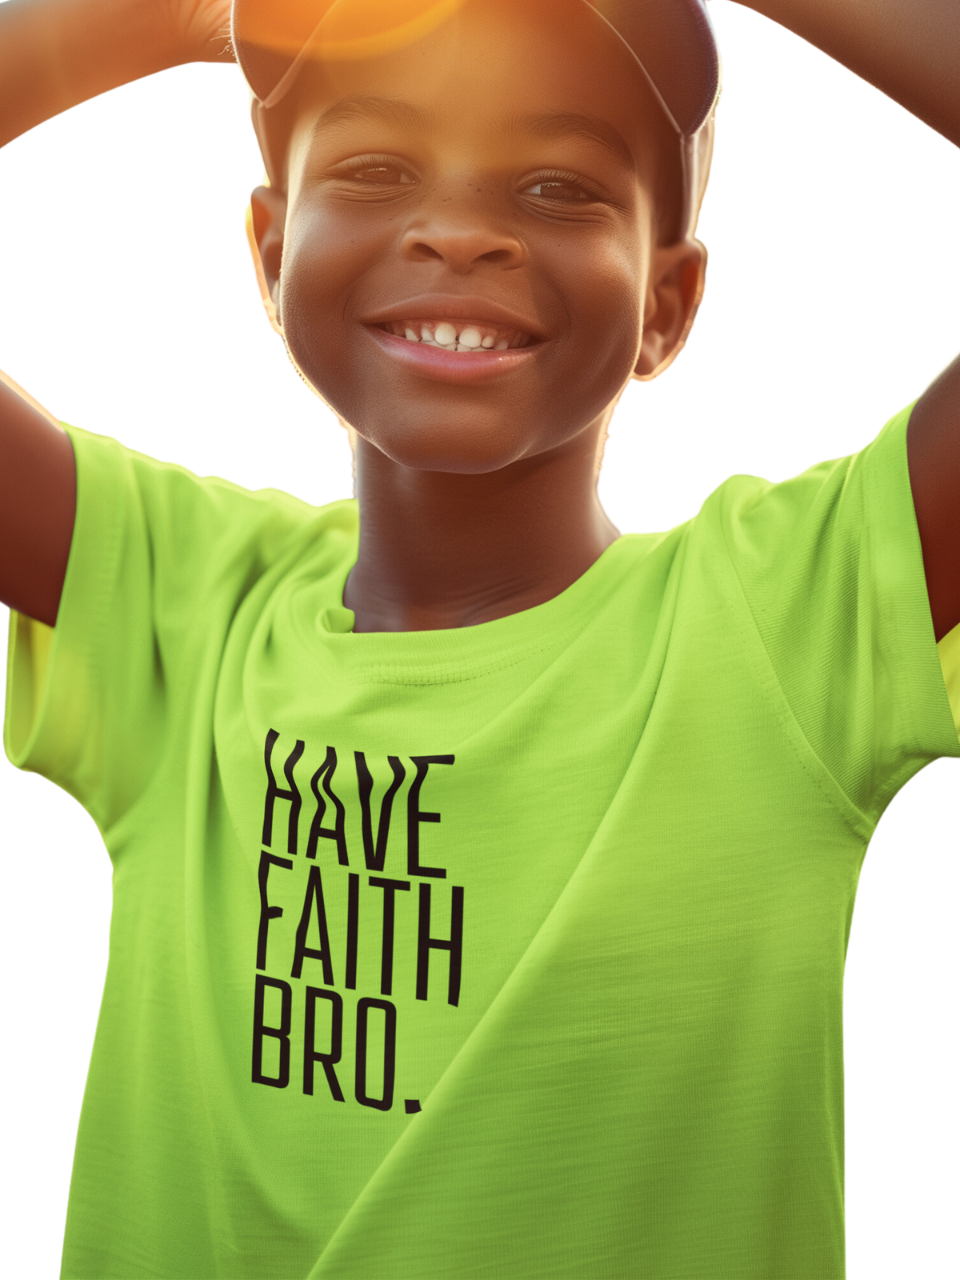 Have Faith Bro. Youth Sports Tee